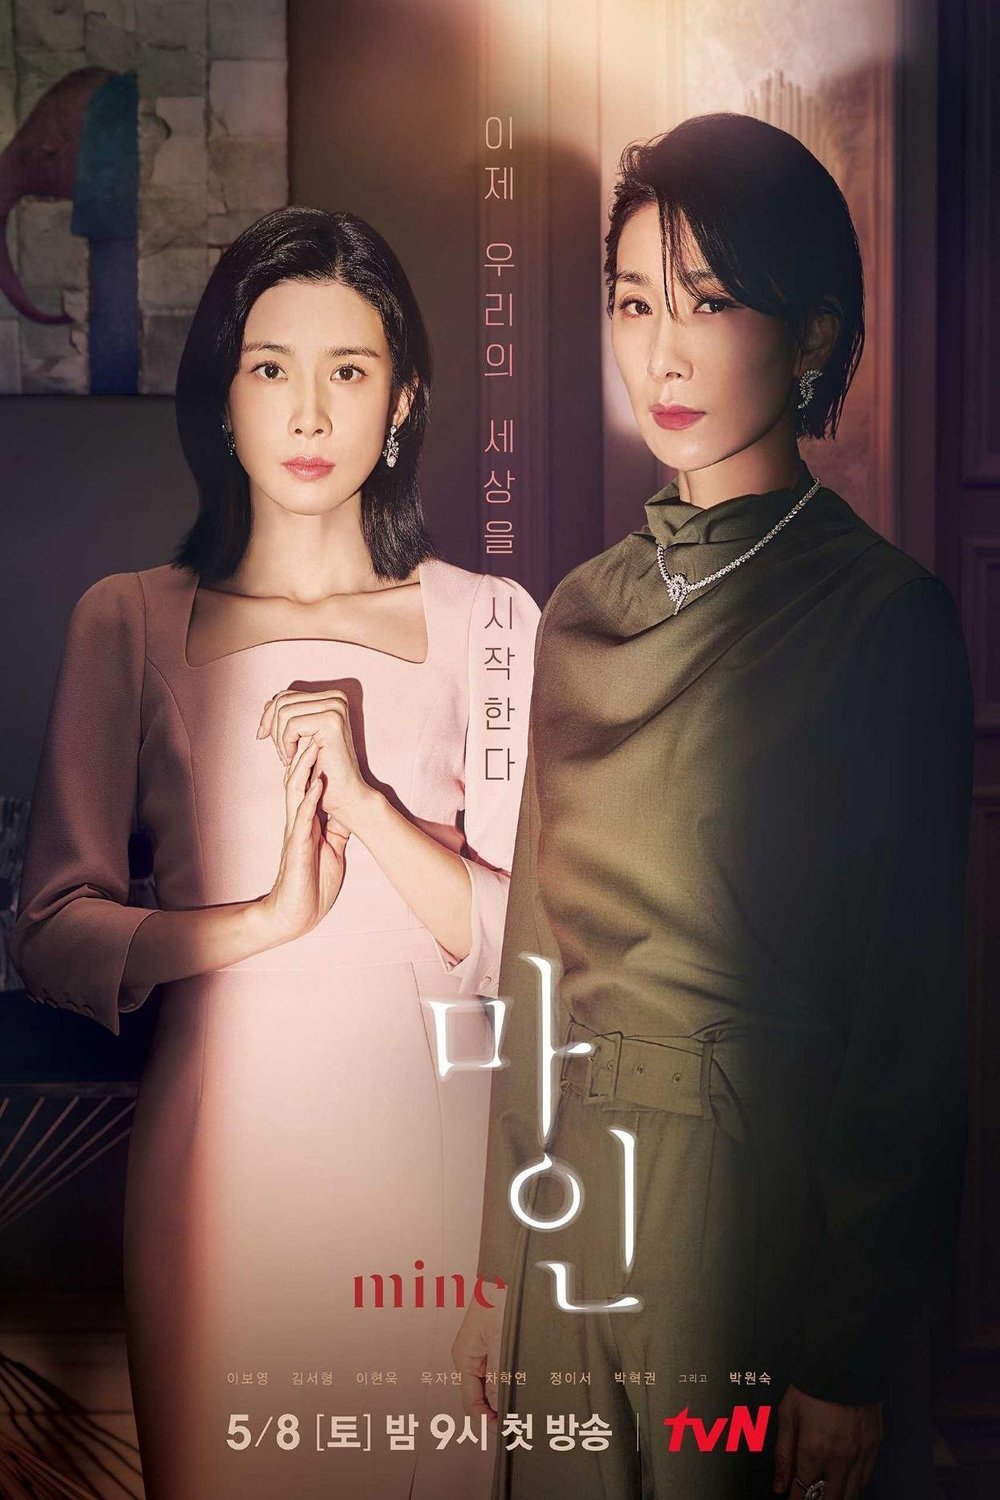 L'affiche originale du film Mine en coréen